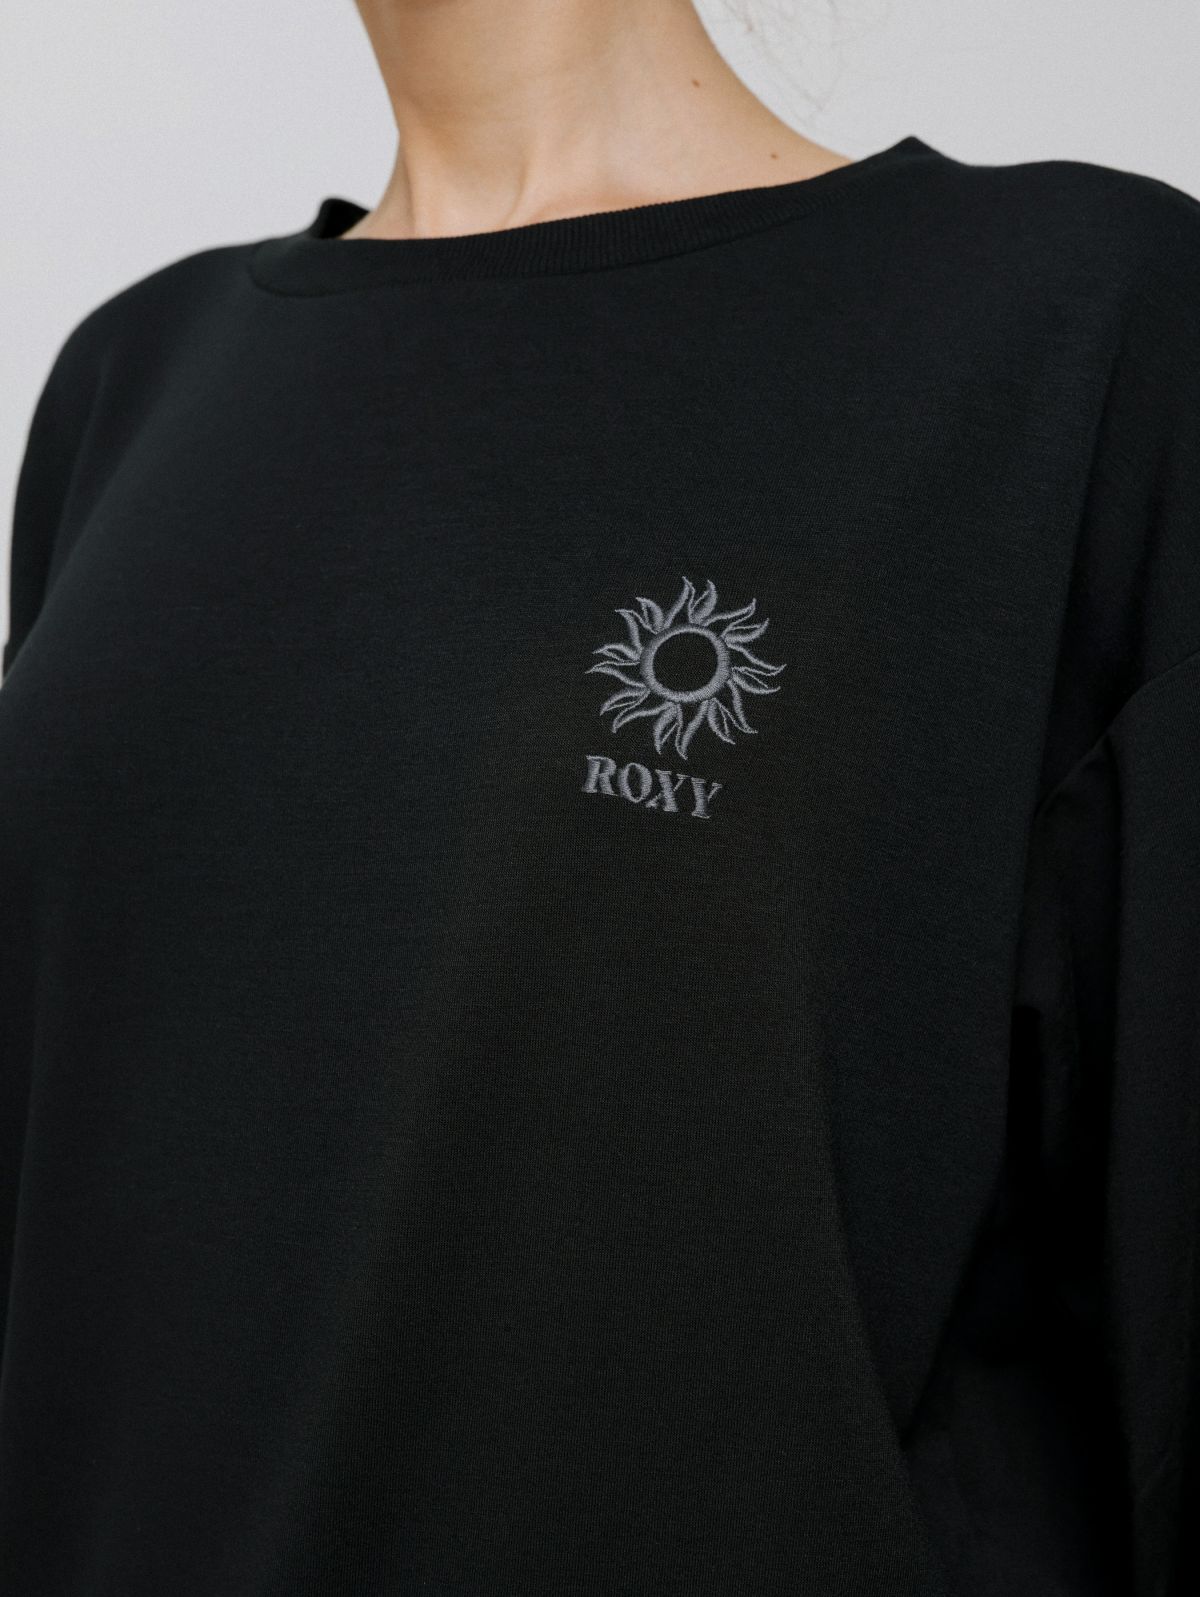  חולצה עם הדפס לוגו של ROXY